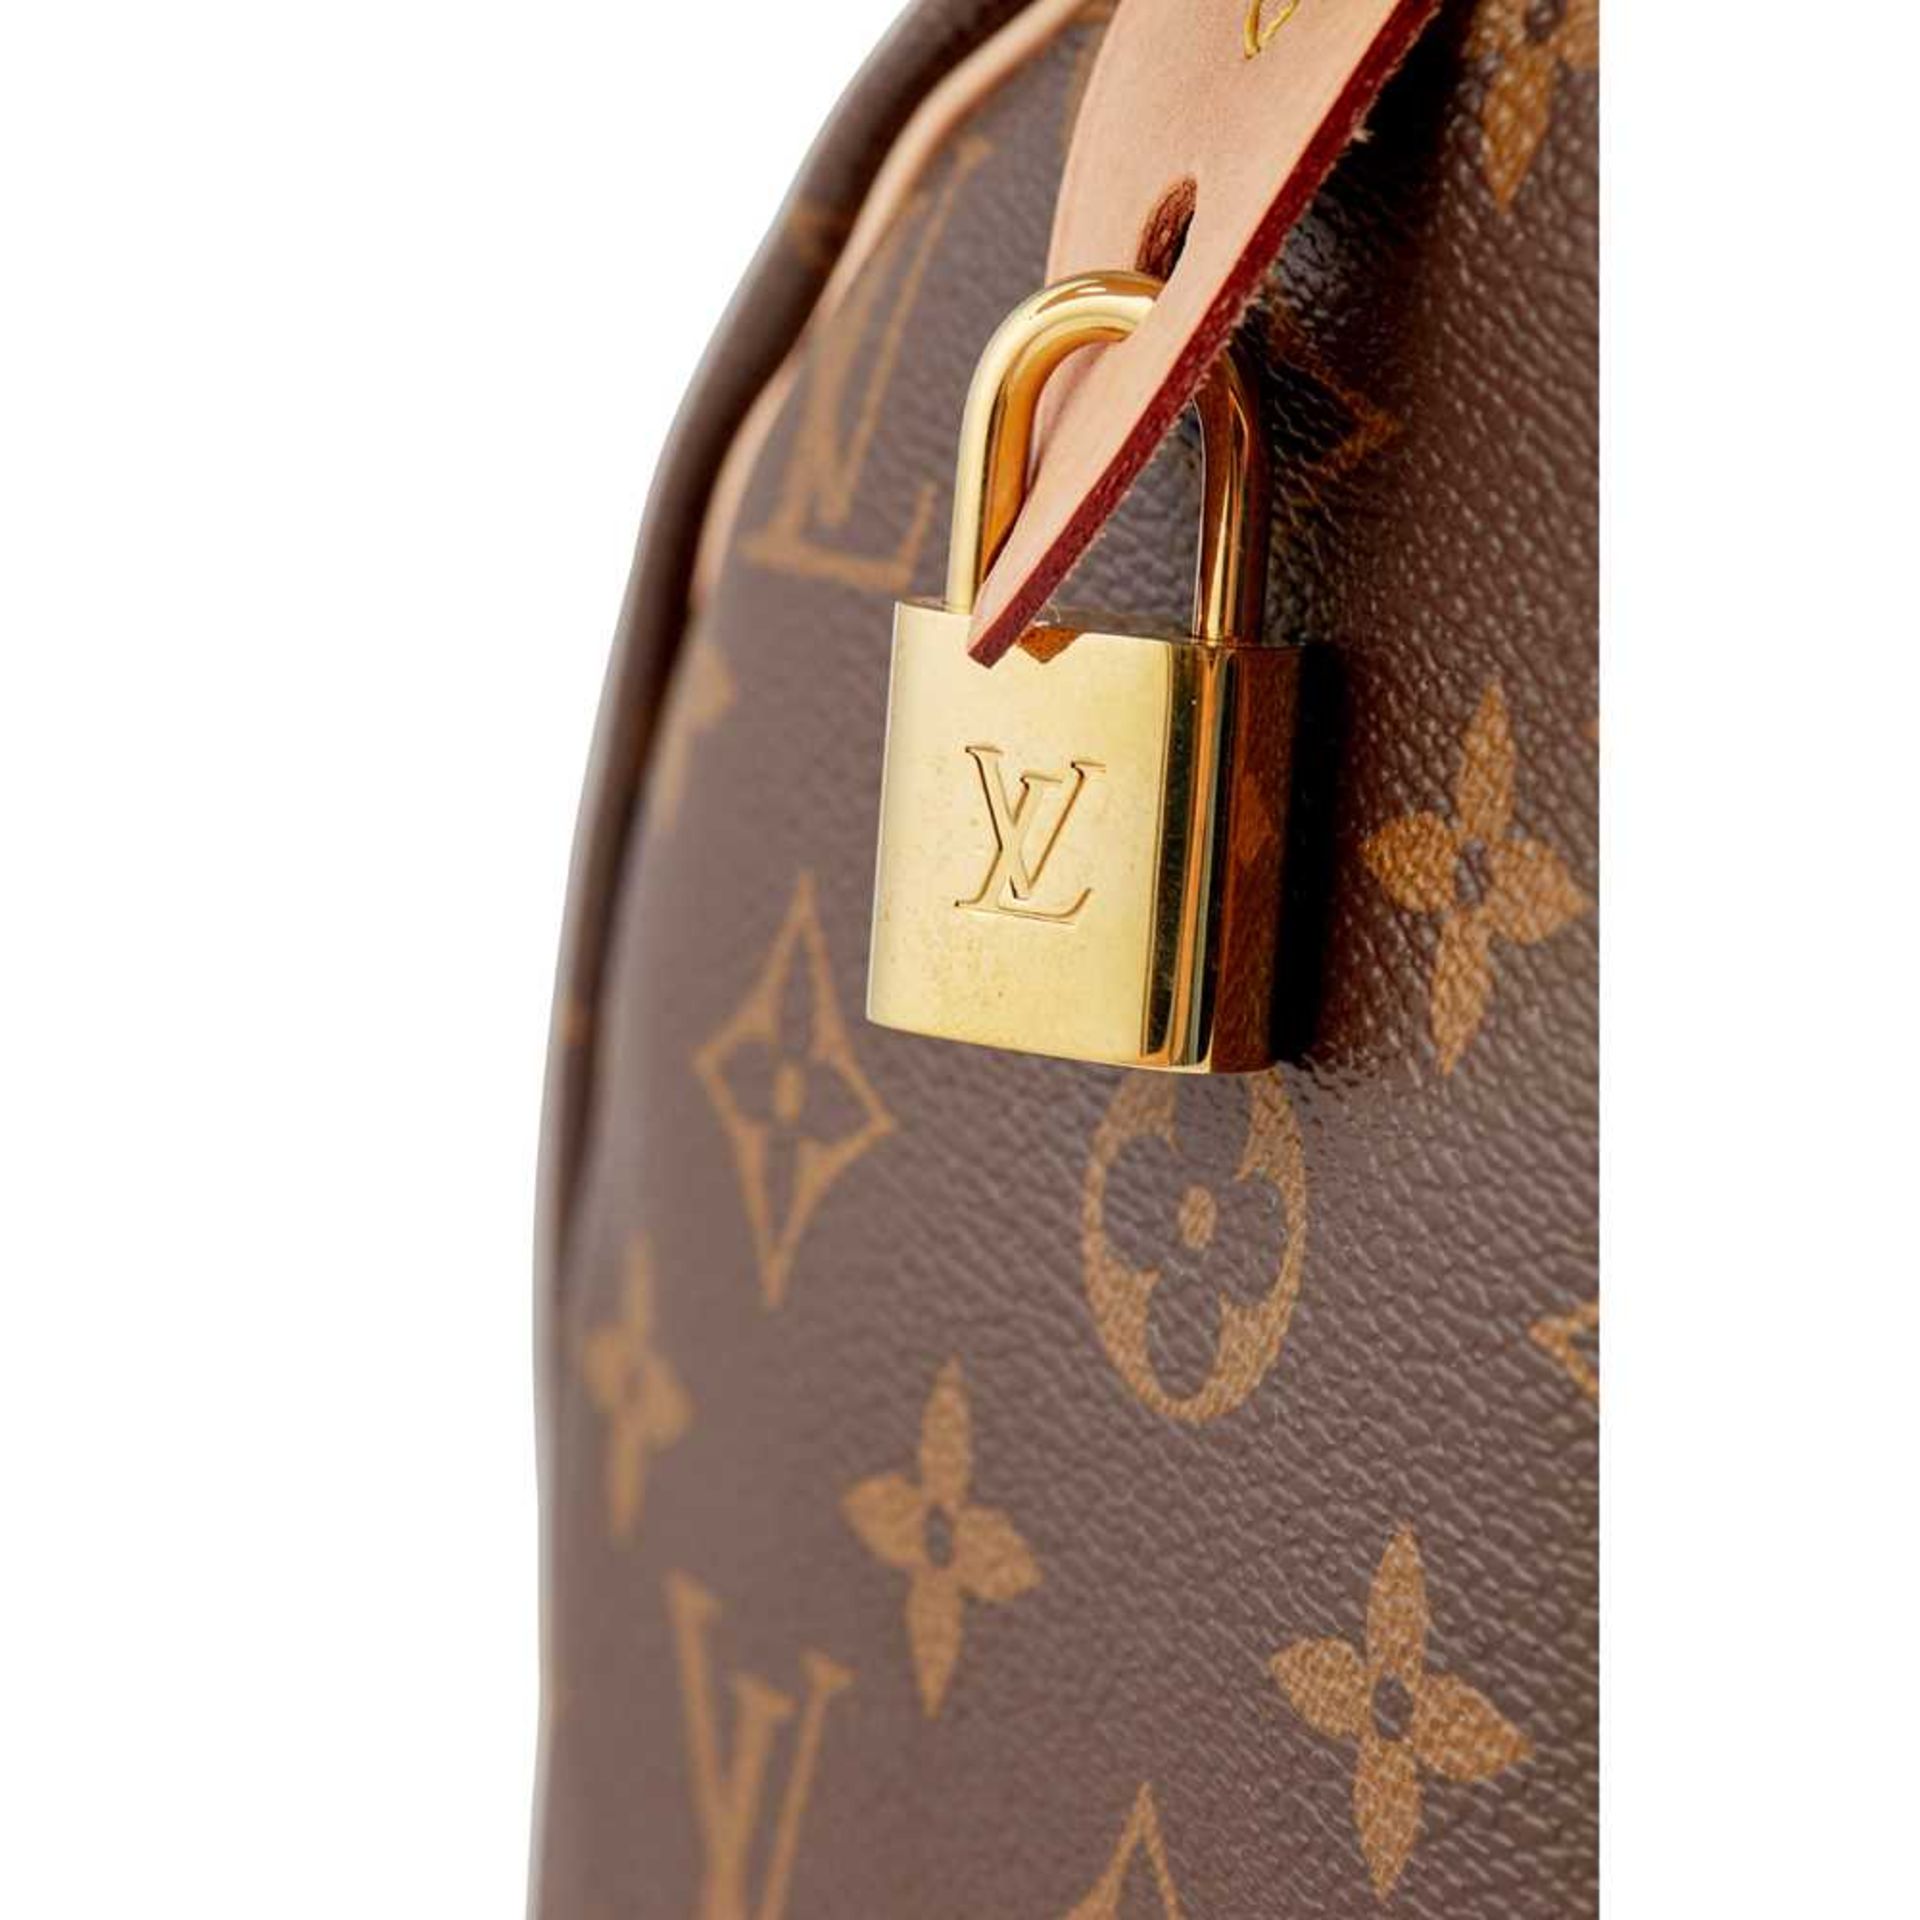 A Speedy 30 handbag, Louis Vuitton - Image 4 of 4